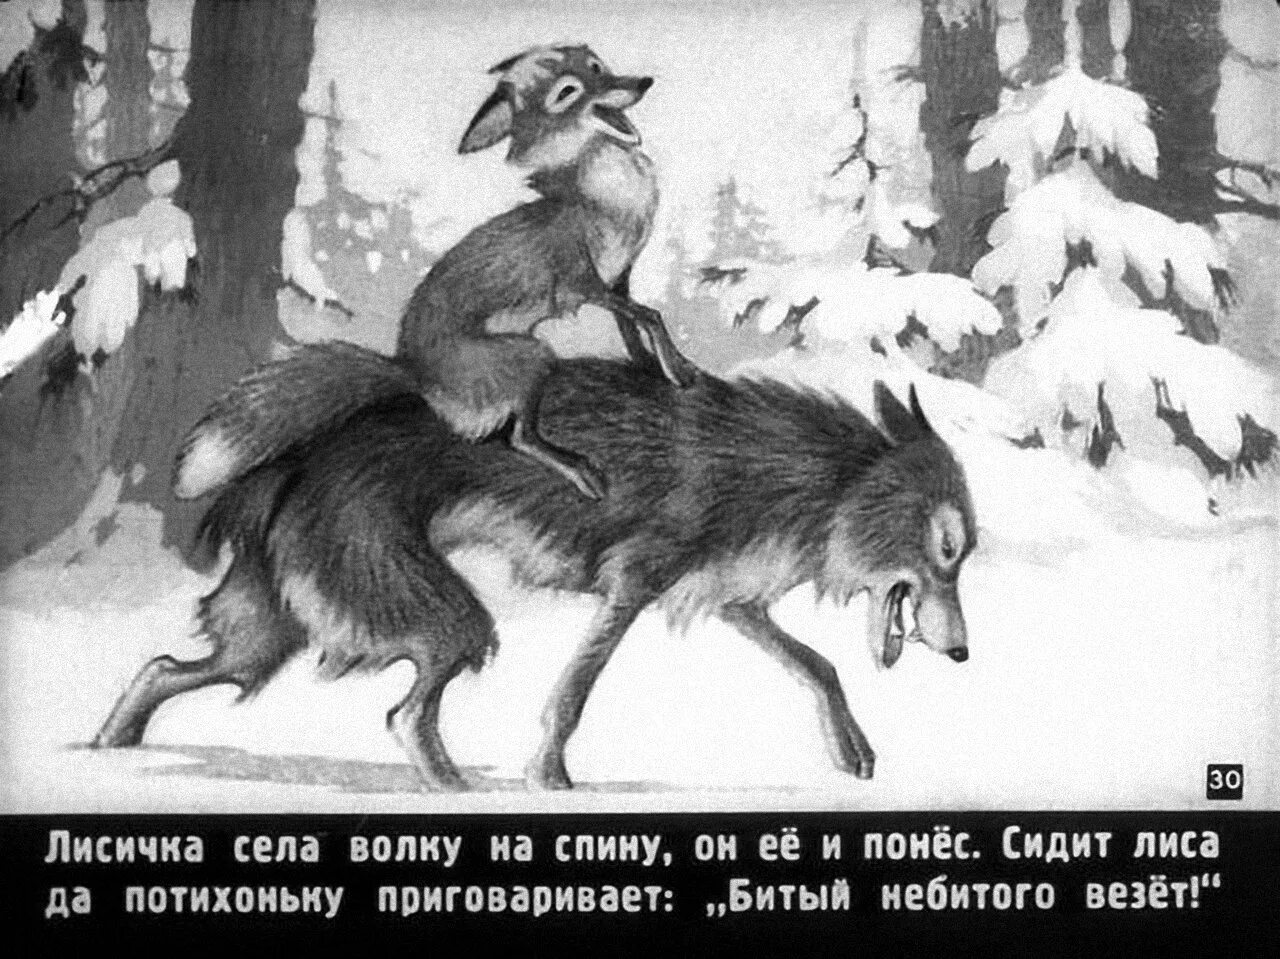 Фраза битый не битого. Волк и лиса битый небитого везет. Лиса и волк Ушинский. Битый не битого везет. Волк и лиса.